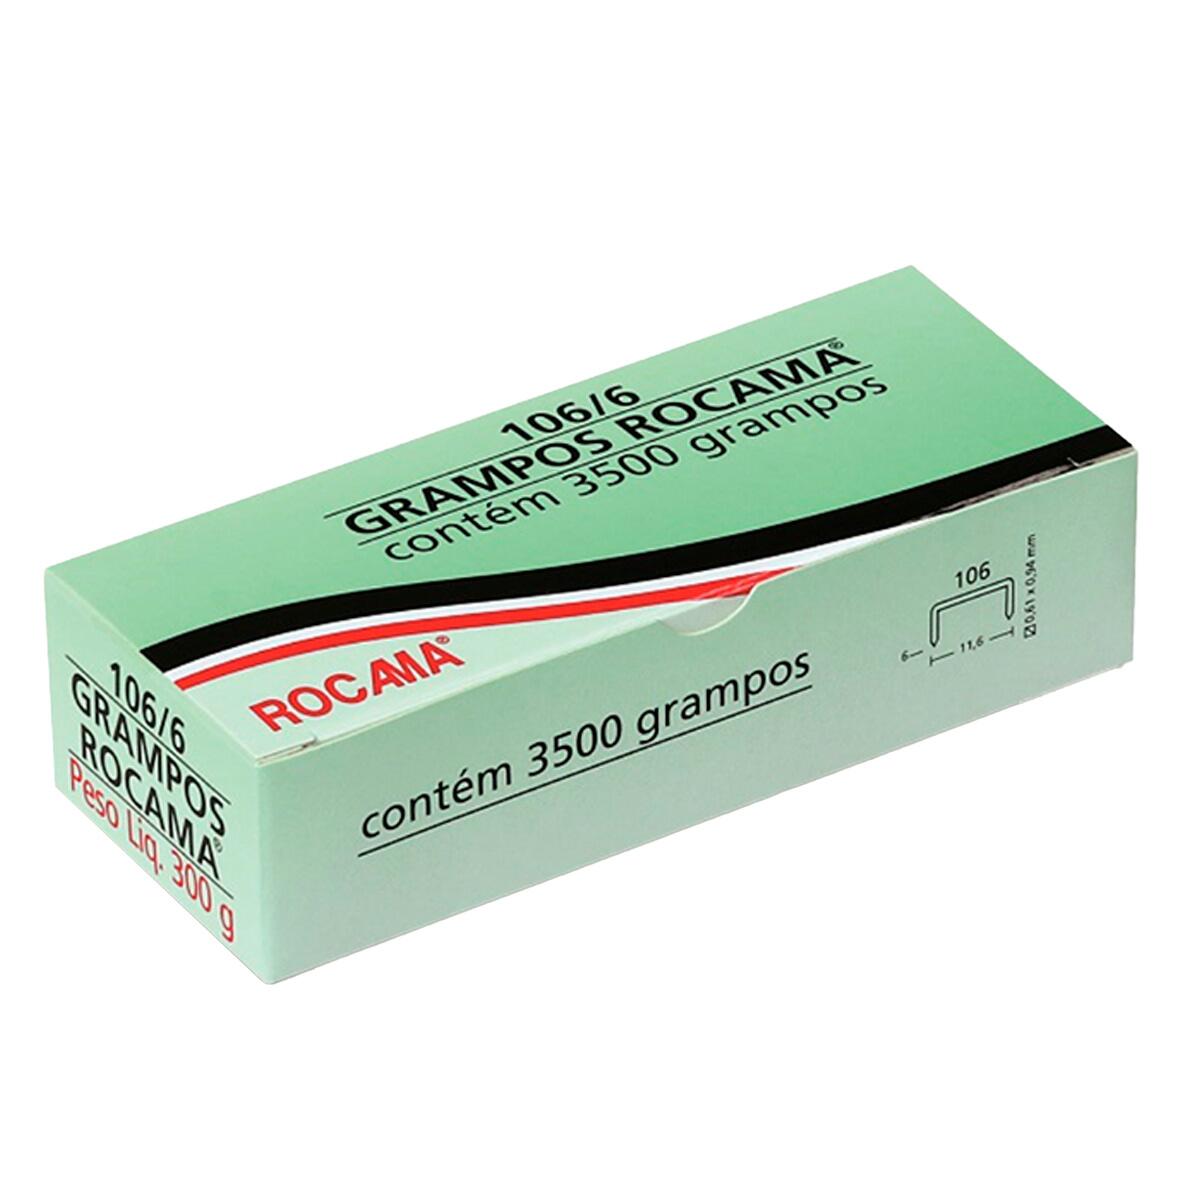 Caixa de Grampos 106/6 300G com 3500 Grampos Rocama